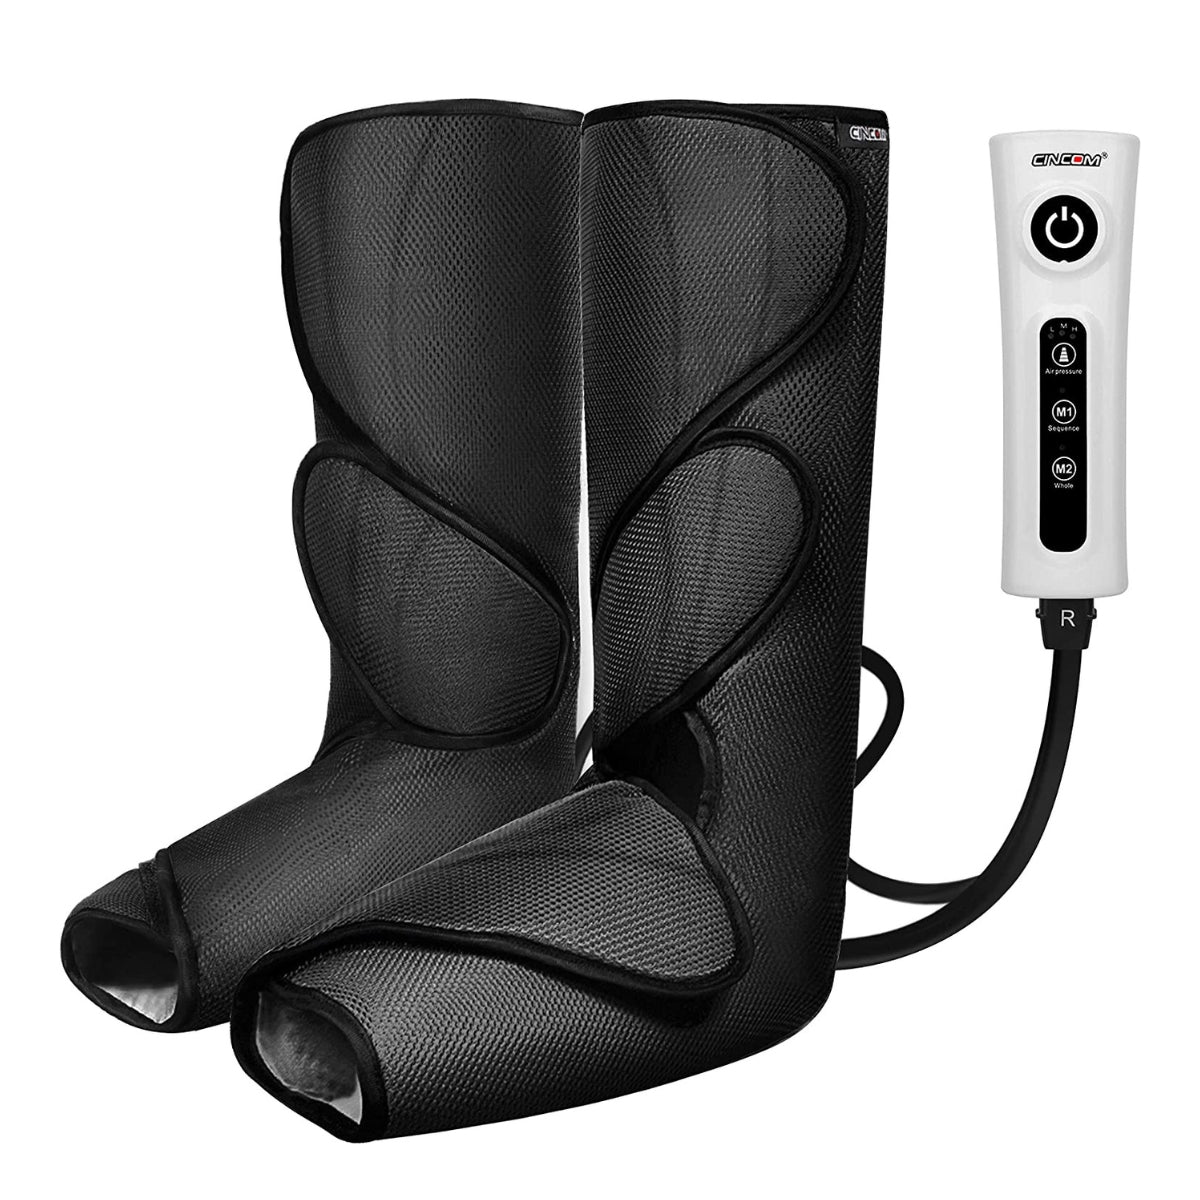 CINCOM Compression Foot and Leg Massager 018A